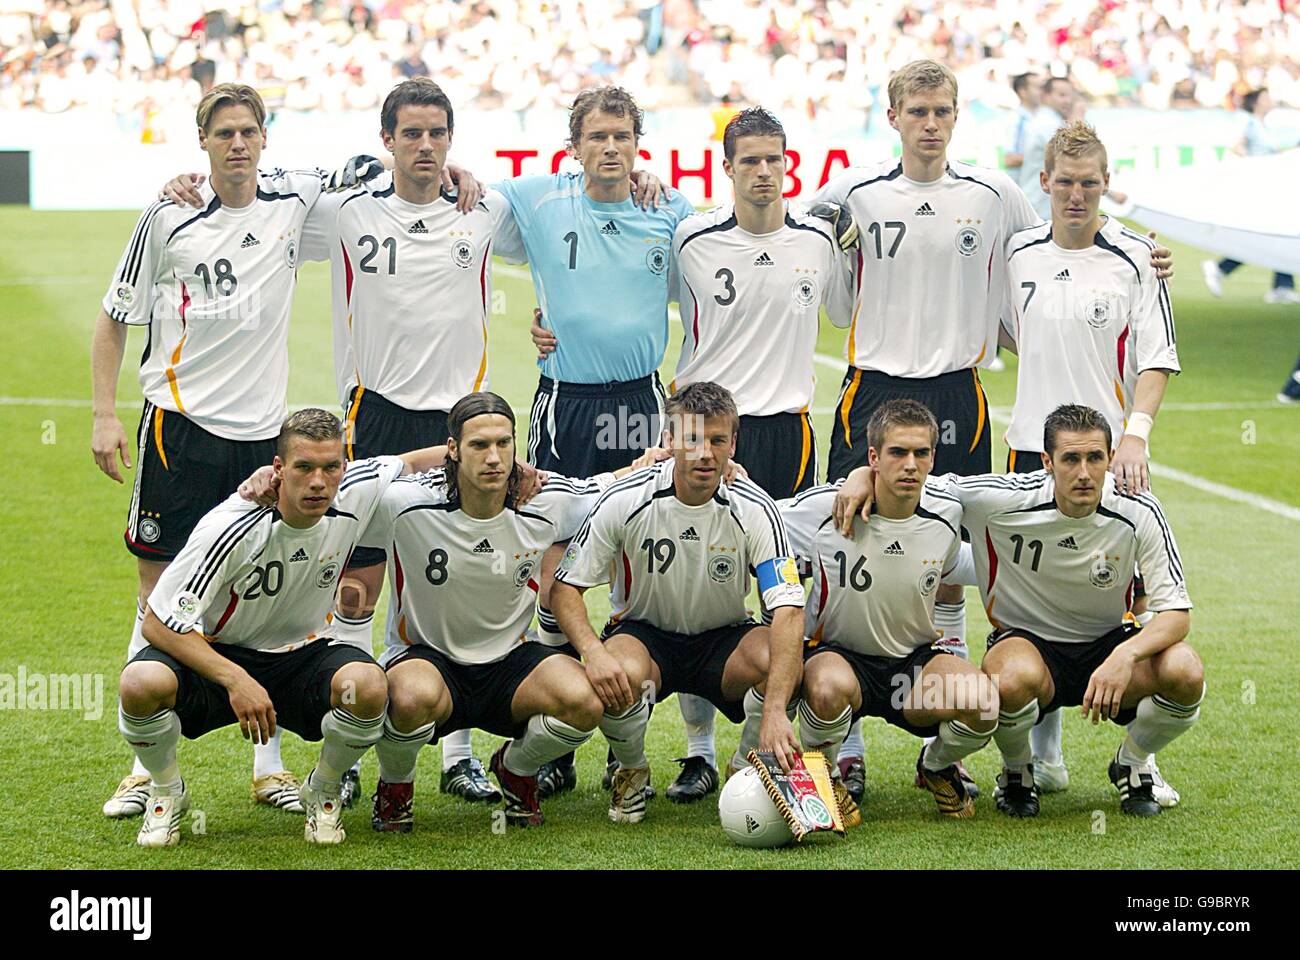 Football - coupe du monde de la FIFA 2006 Allemagne - Groupe A - Allemagne  v Costa Rica - Allianz Arena. L'équipe allemande avant le match Photo Stock  - Alamy